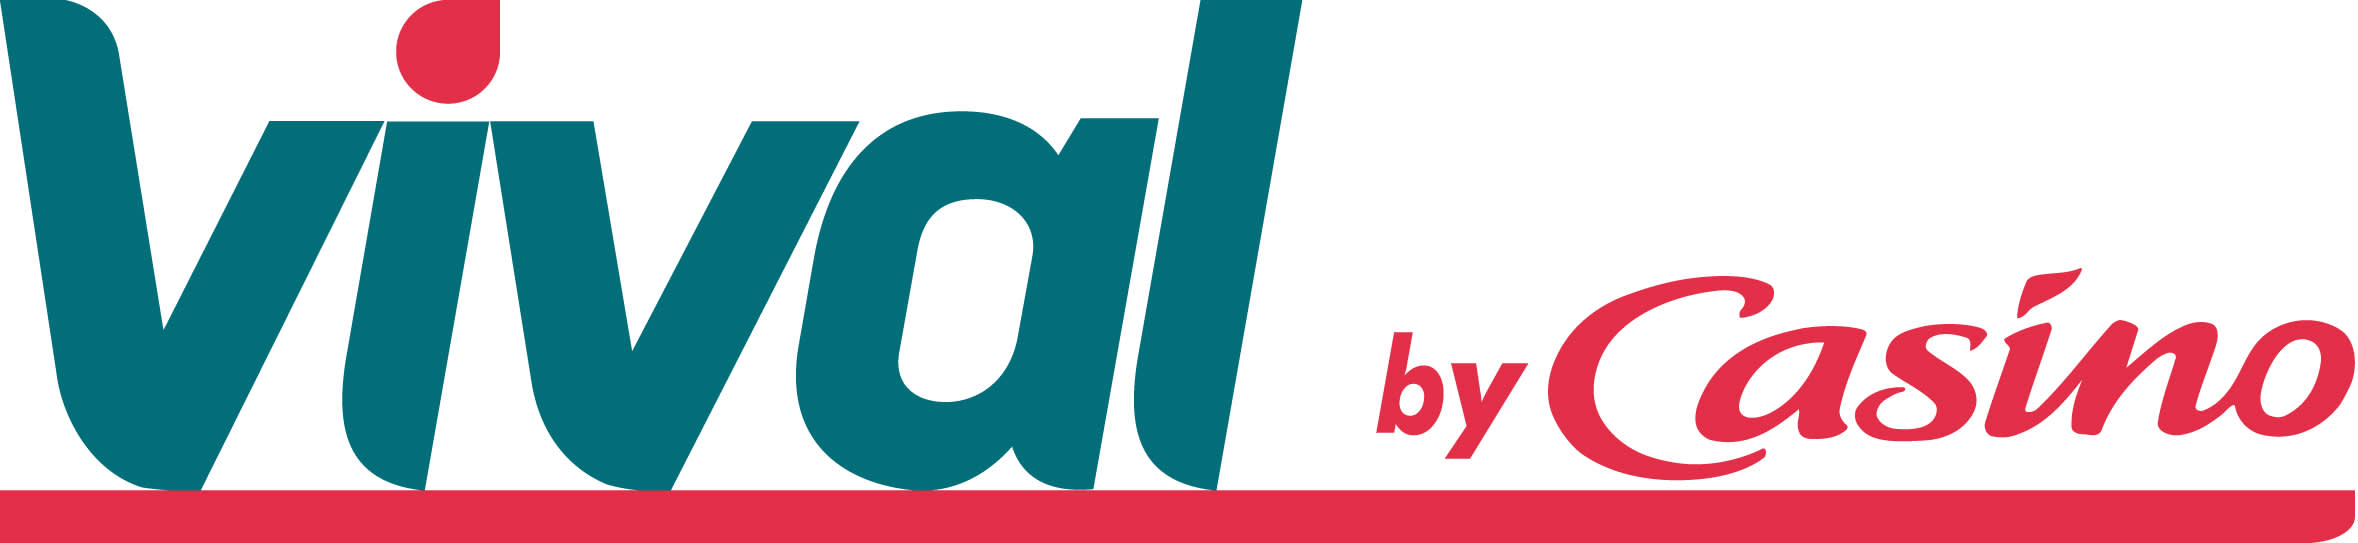 Logo VIVAL.jpg